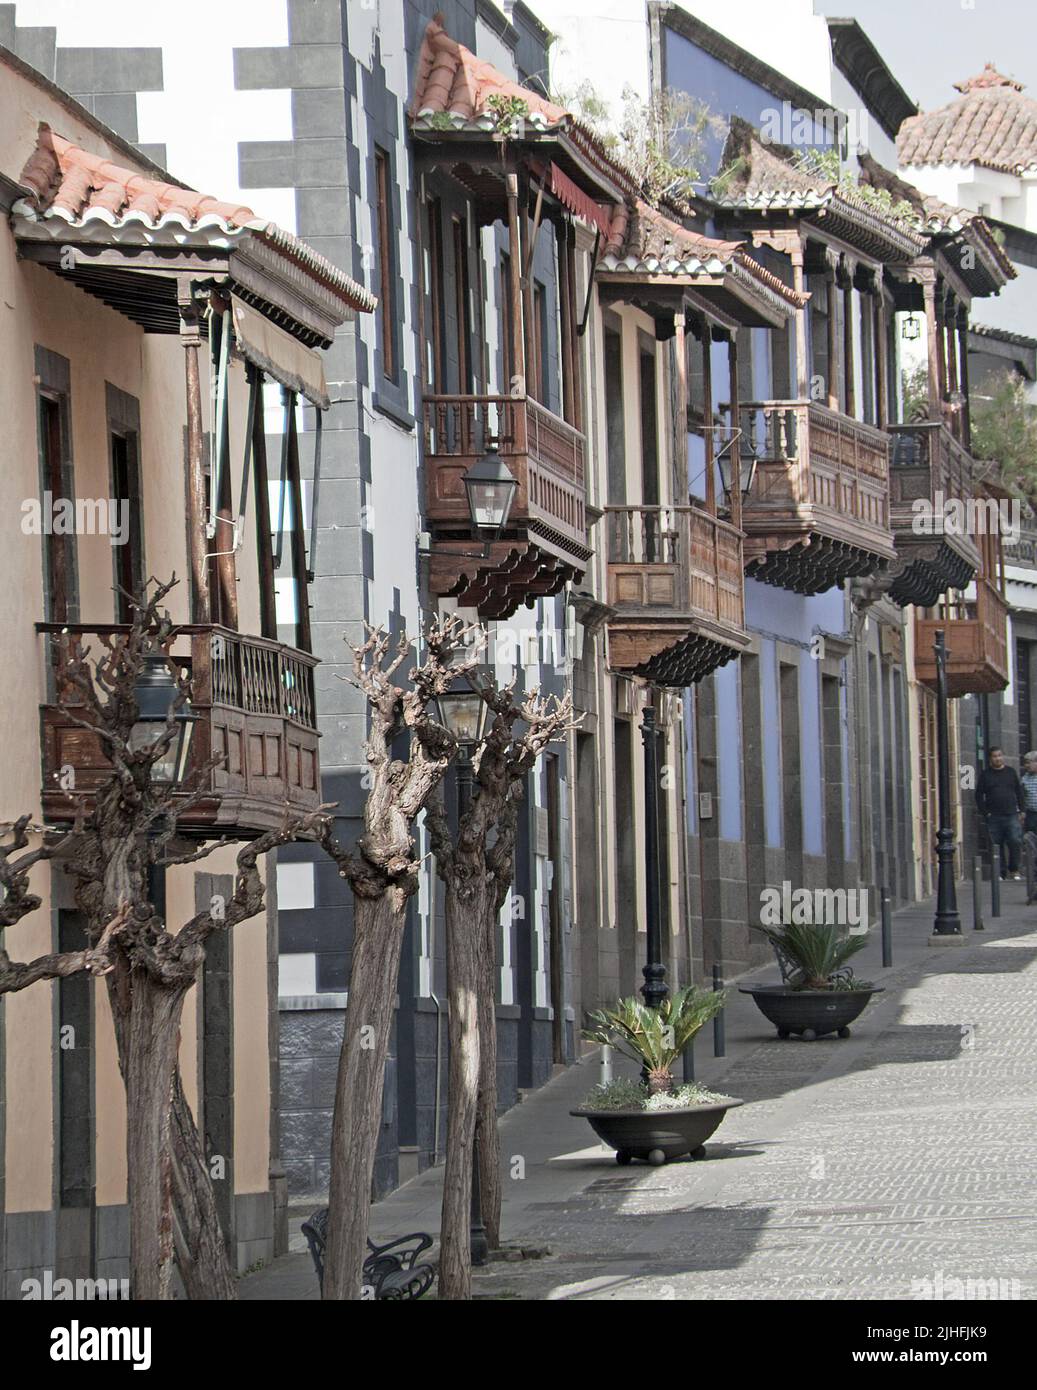 Manoirs historiques avec balcons traditionnels en bois, vieille ville, depuis 1979 sous protection, Teror, Grand Canary, îles Canaries, Espagne, Europe Banque D'Images